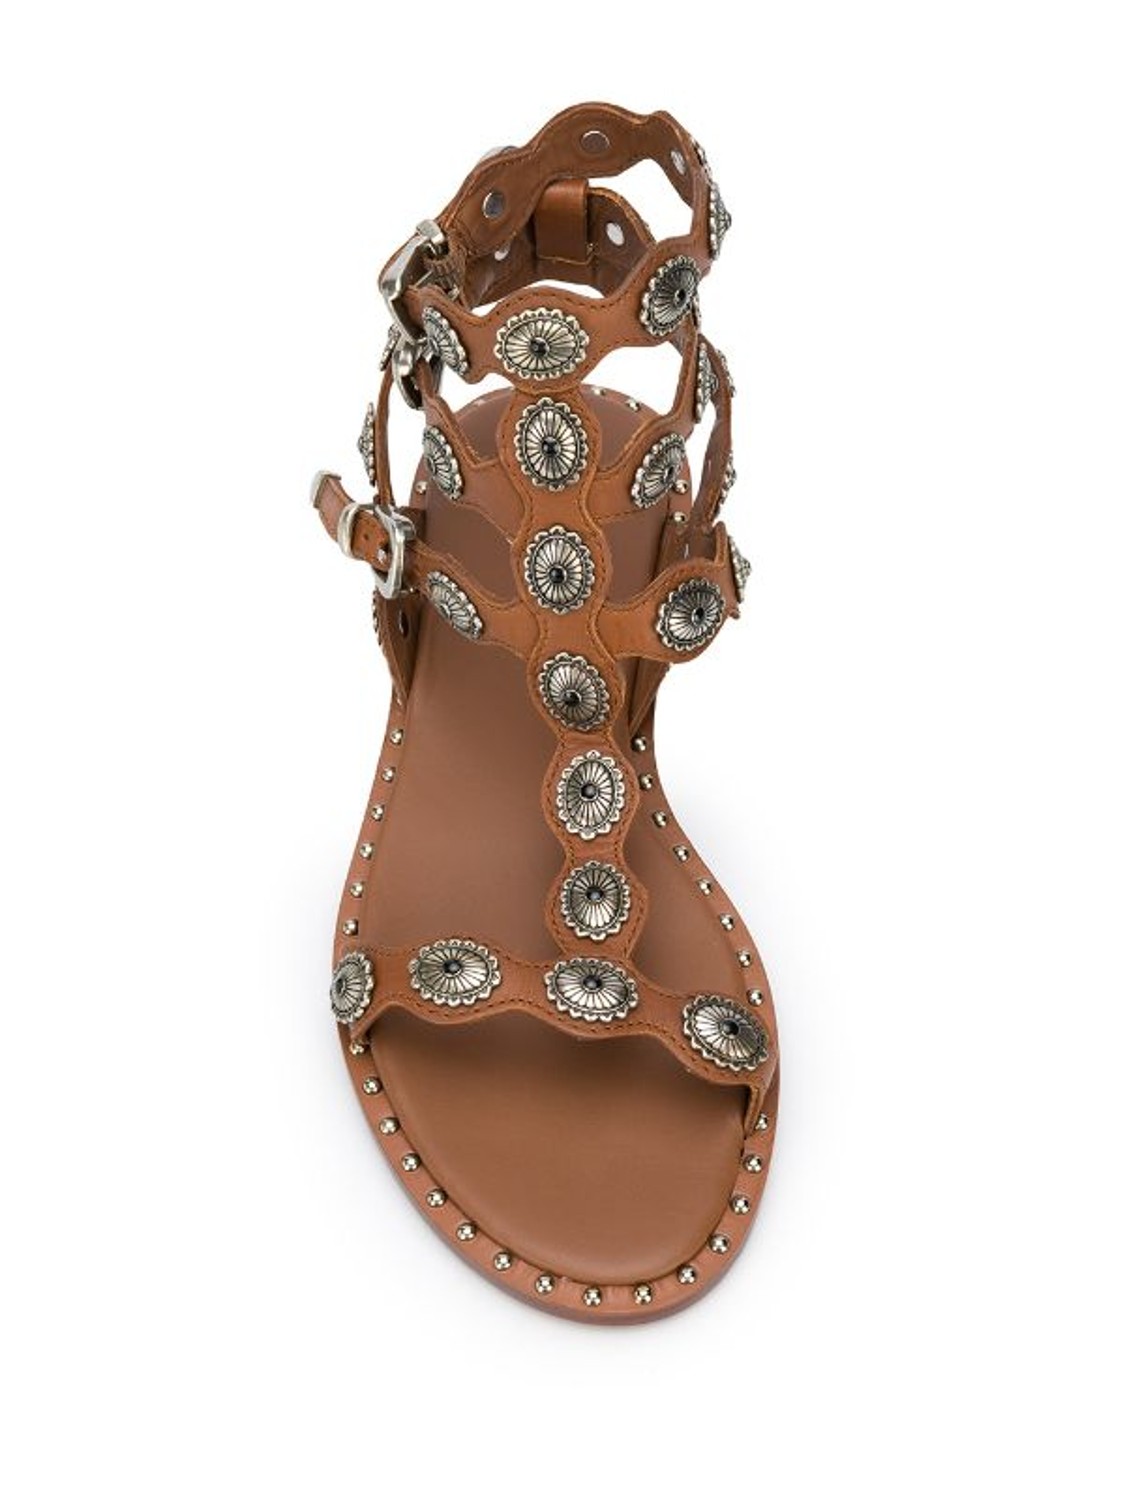 shop Ash Saldi Scarpe: Scarpe Ash, sandali con borchie in metallo, color cuoio, allacciatura alla caviglia, punta arrotondata.

Composizione: 100% pelle. number 1819